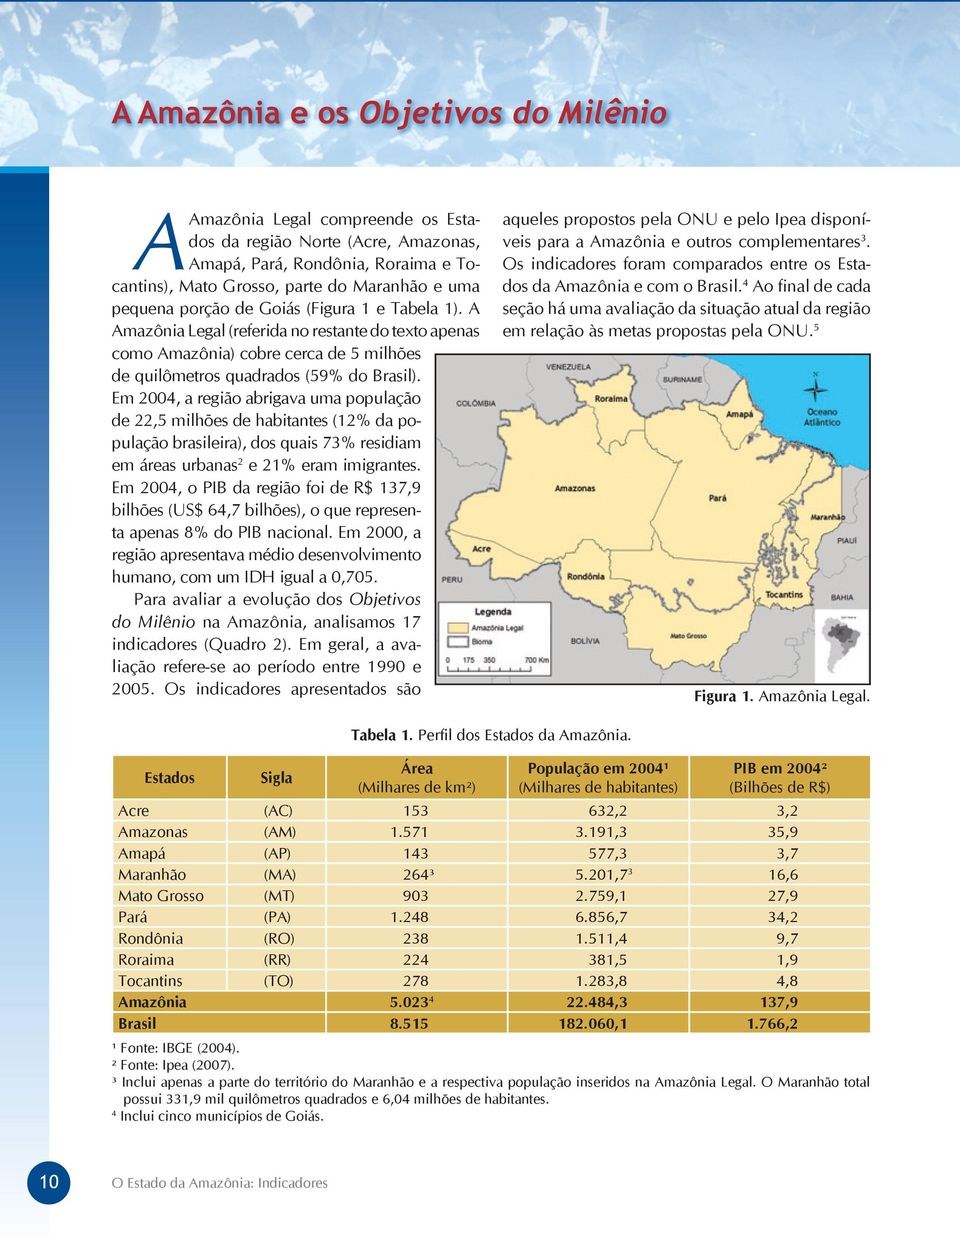 Em 2004, a região abrigava uma população de 22,5 milhões de habitantes (12% da população brasileira), dos quais 73% residiam em áreas urbanas 2 e 21% eram imigrantes.